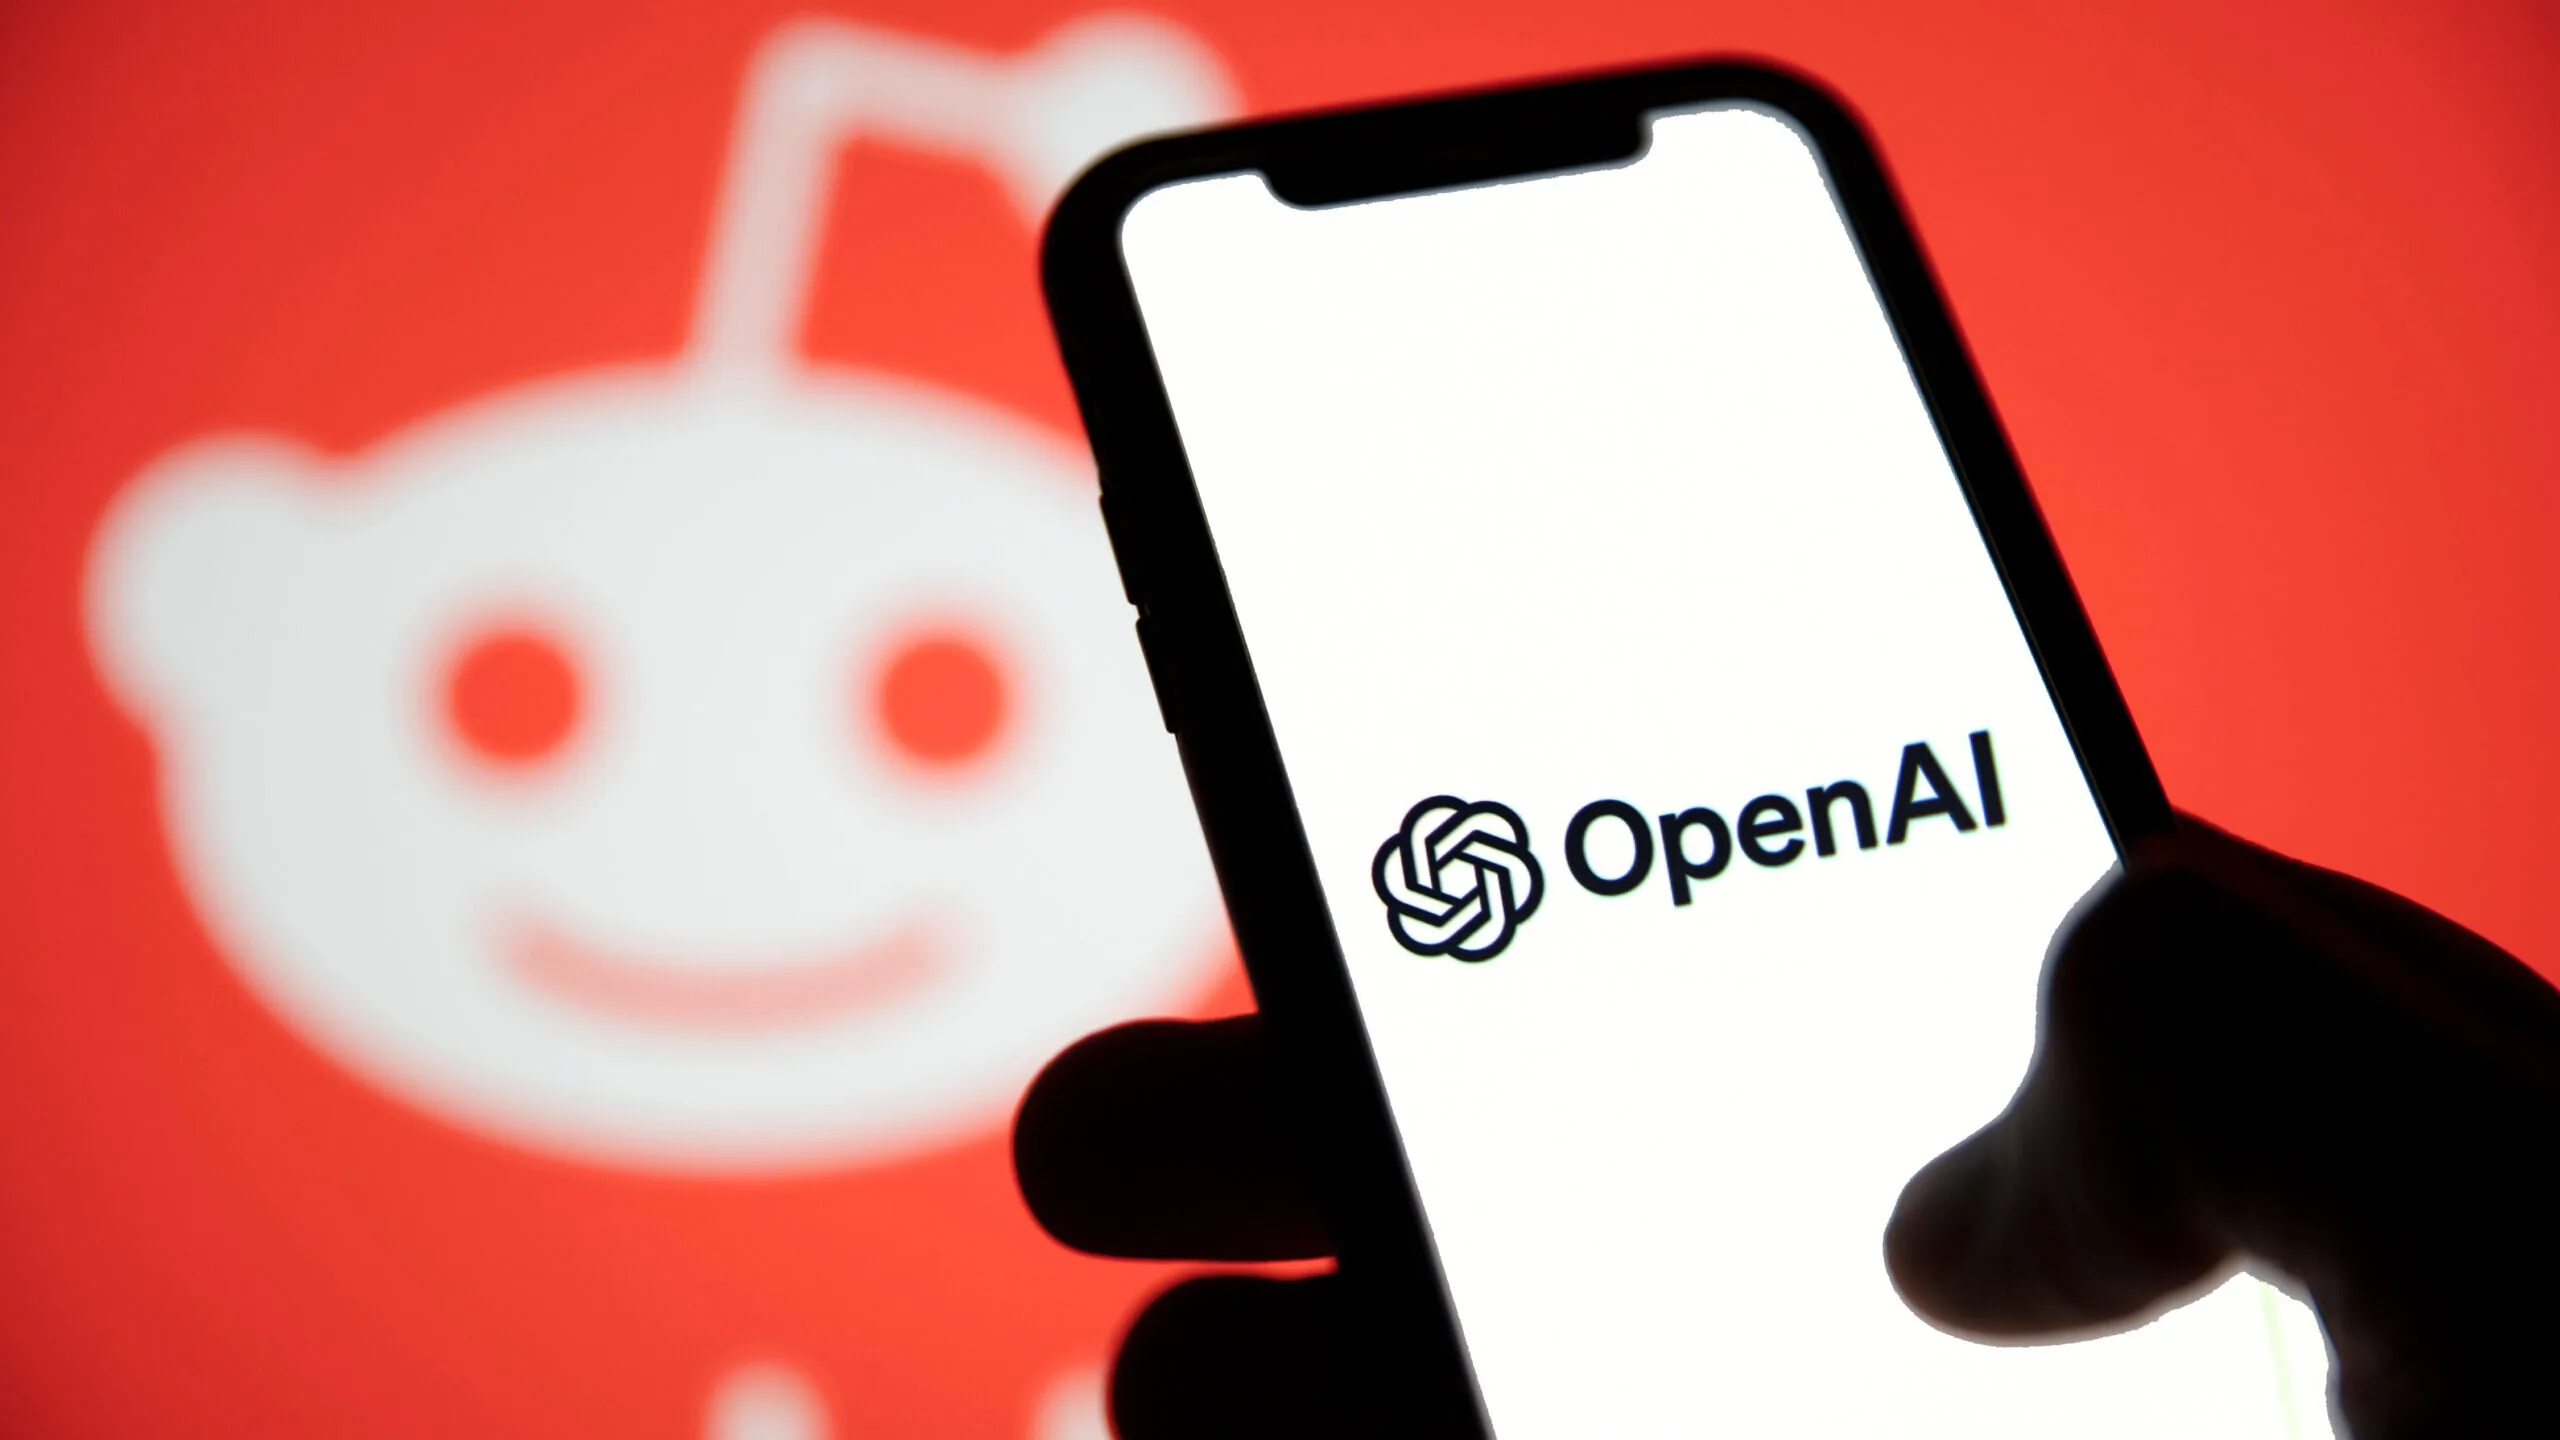 OpenAI Reddit ile anlaşma yaparak AI için içerik alıyor